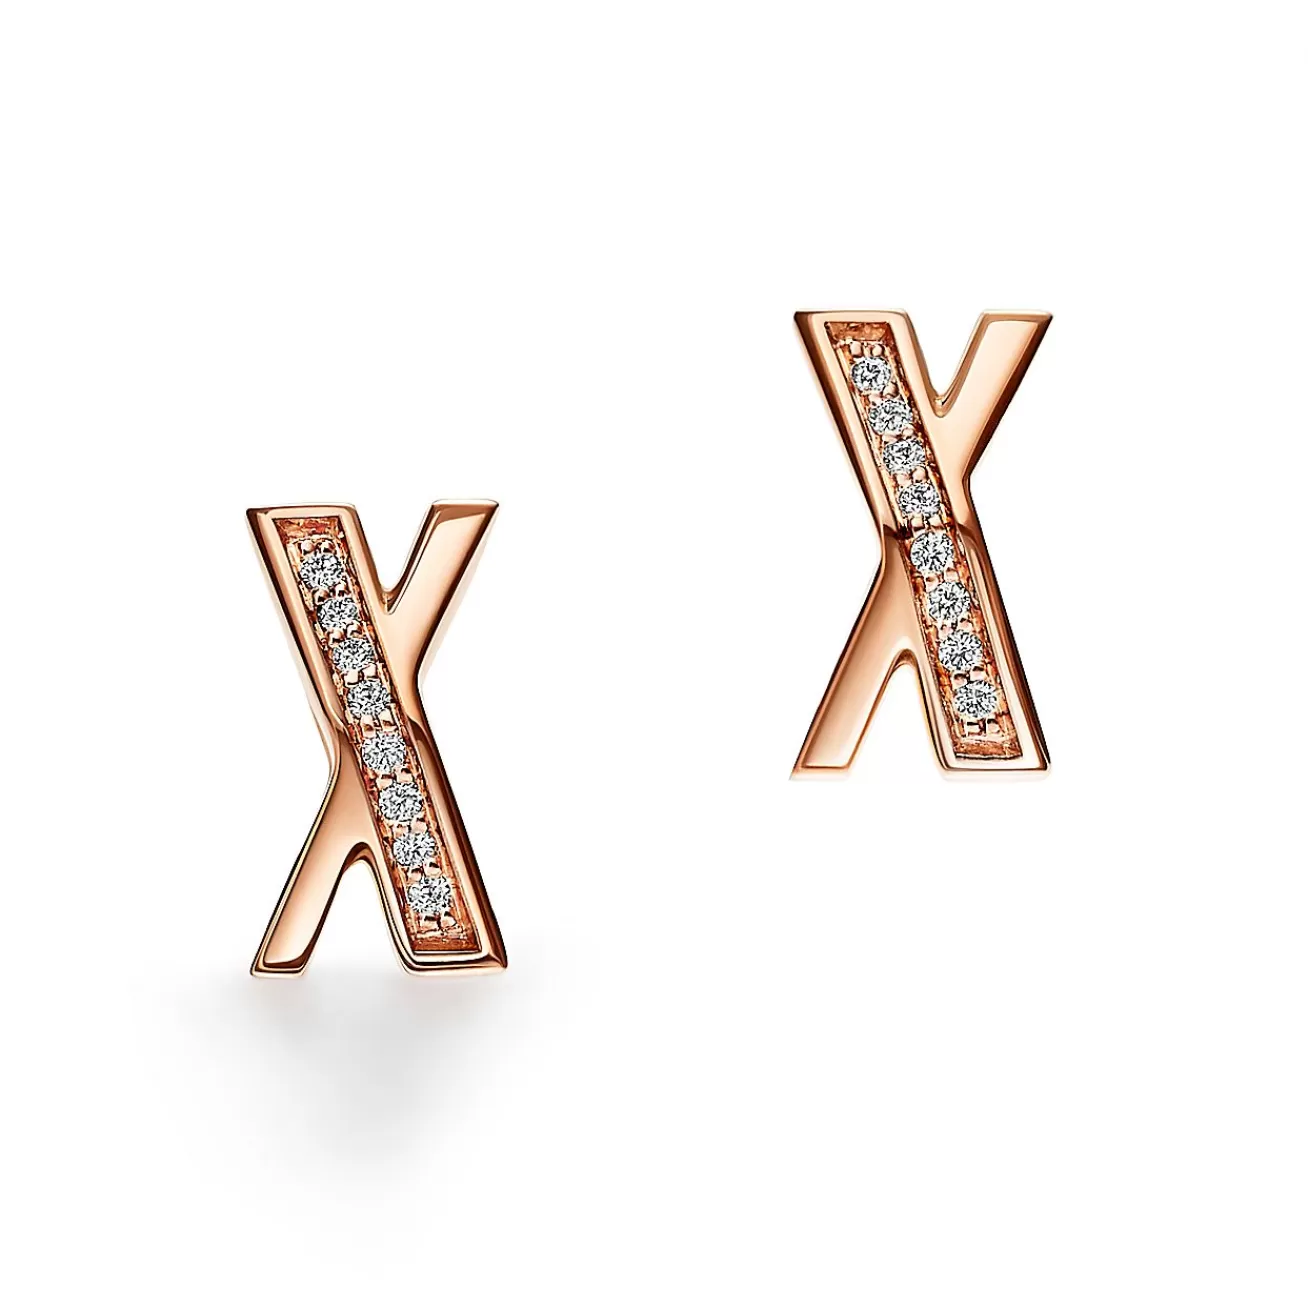 Tiffany & Co. Atlas® X Earrings in Rose Gold with Diamonds | ^ Earrings | Rose Gold Jewelry